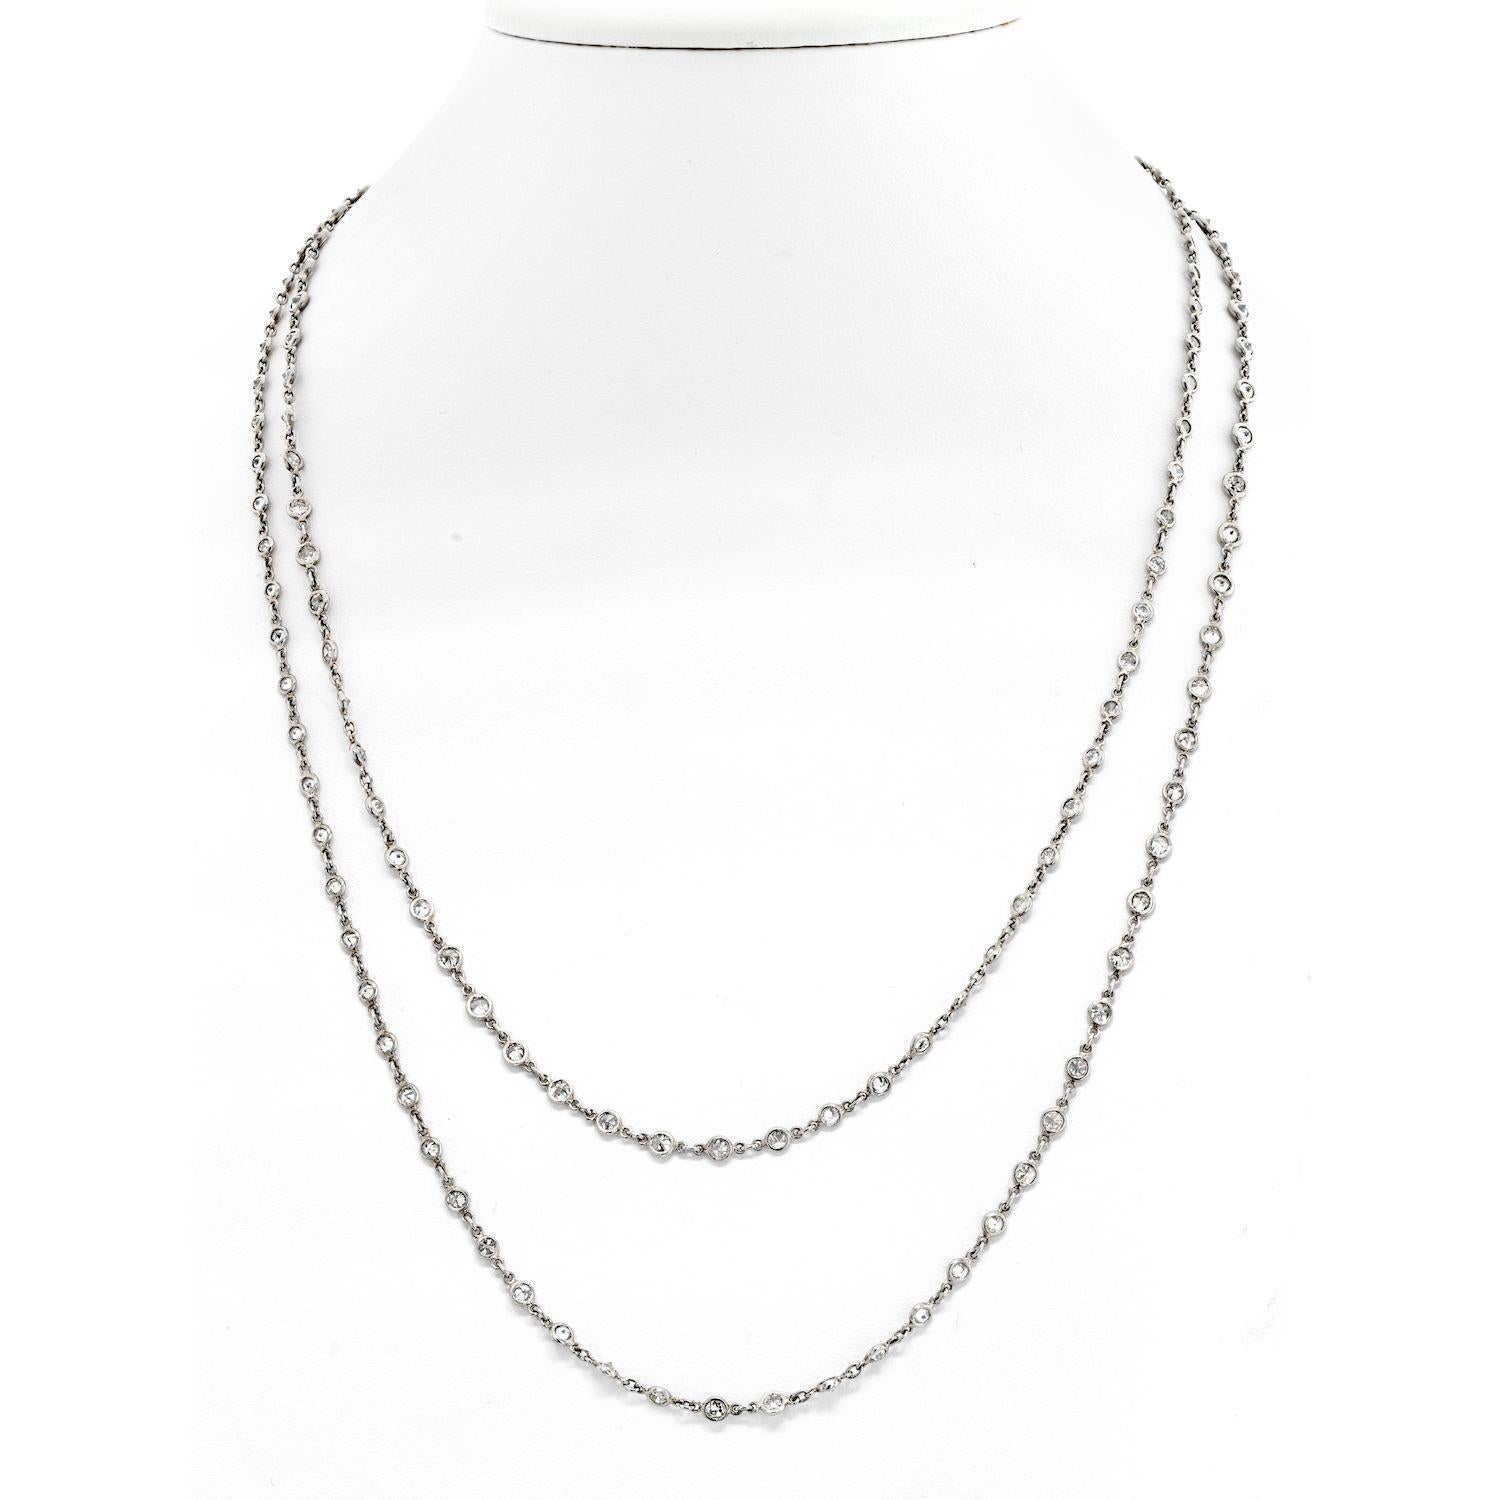 Die Platinum 20.00cttw Diamond By The Yard Chain Necklace ist ein atemberaubendes Schmuckstück, das Eleganz und Raffinesse ausstrahlt. Diese 44 Zentimeter lange Halskette ist mit funkelnden Diamanten besetzt, die ihr einen eleganten und modernen